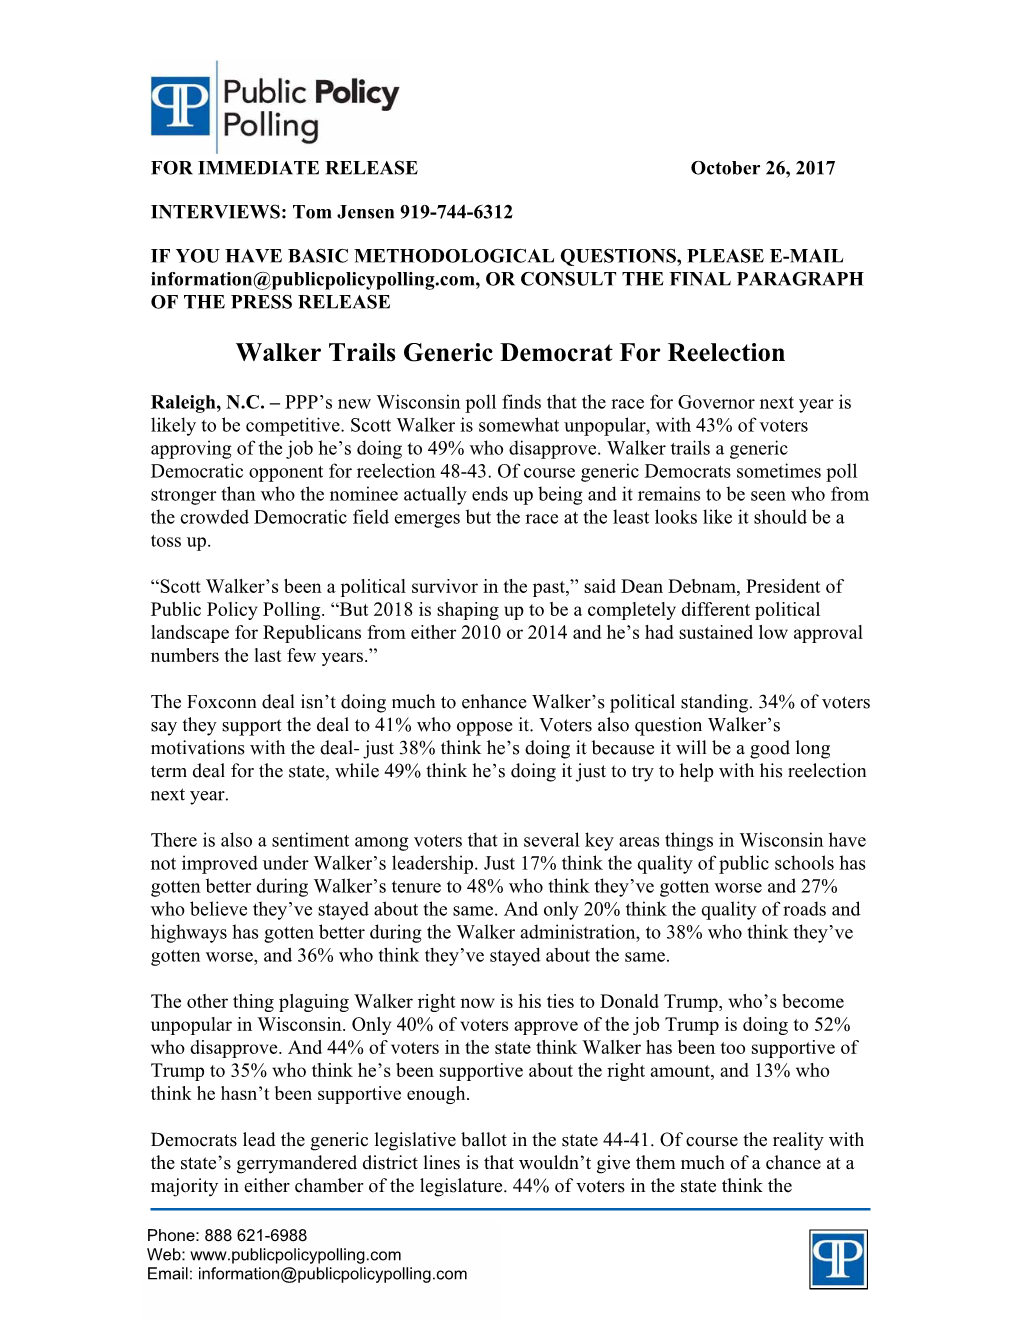 Walker Trails Generic Democrat for Reelection